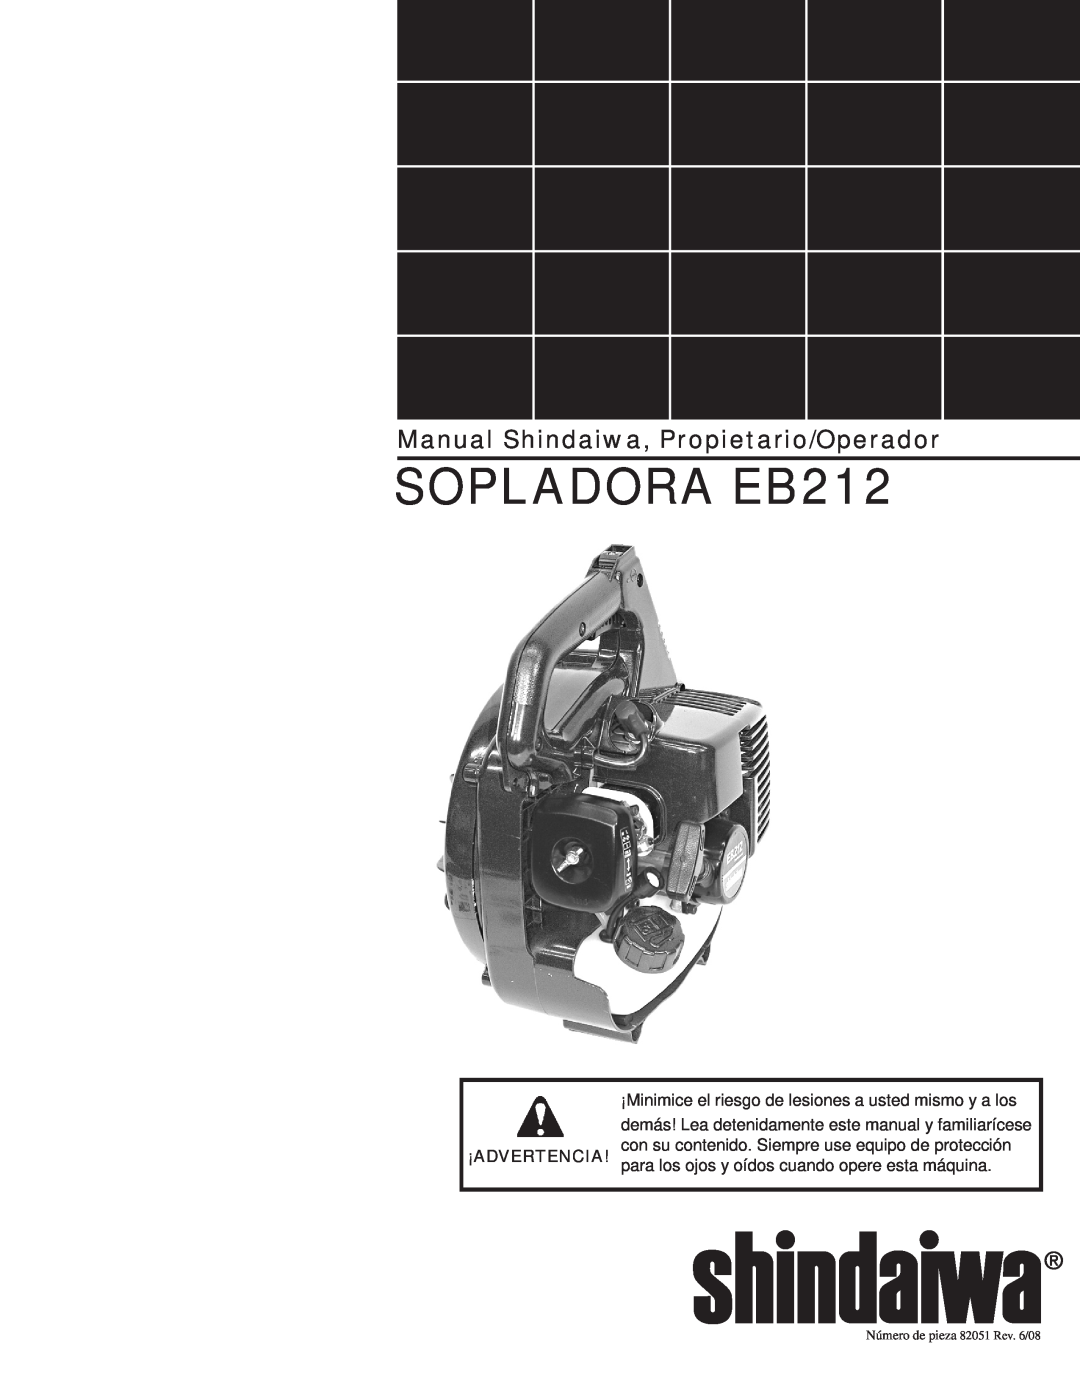 Shindaiwa 82051 SOPLADORA EB212, Manual Shindaiwa, Propietario/Operador, para los ojos y oídos cuando opere esta máquina 